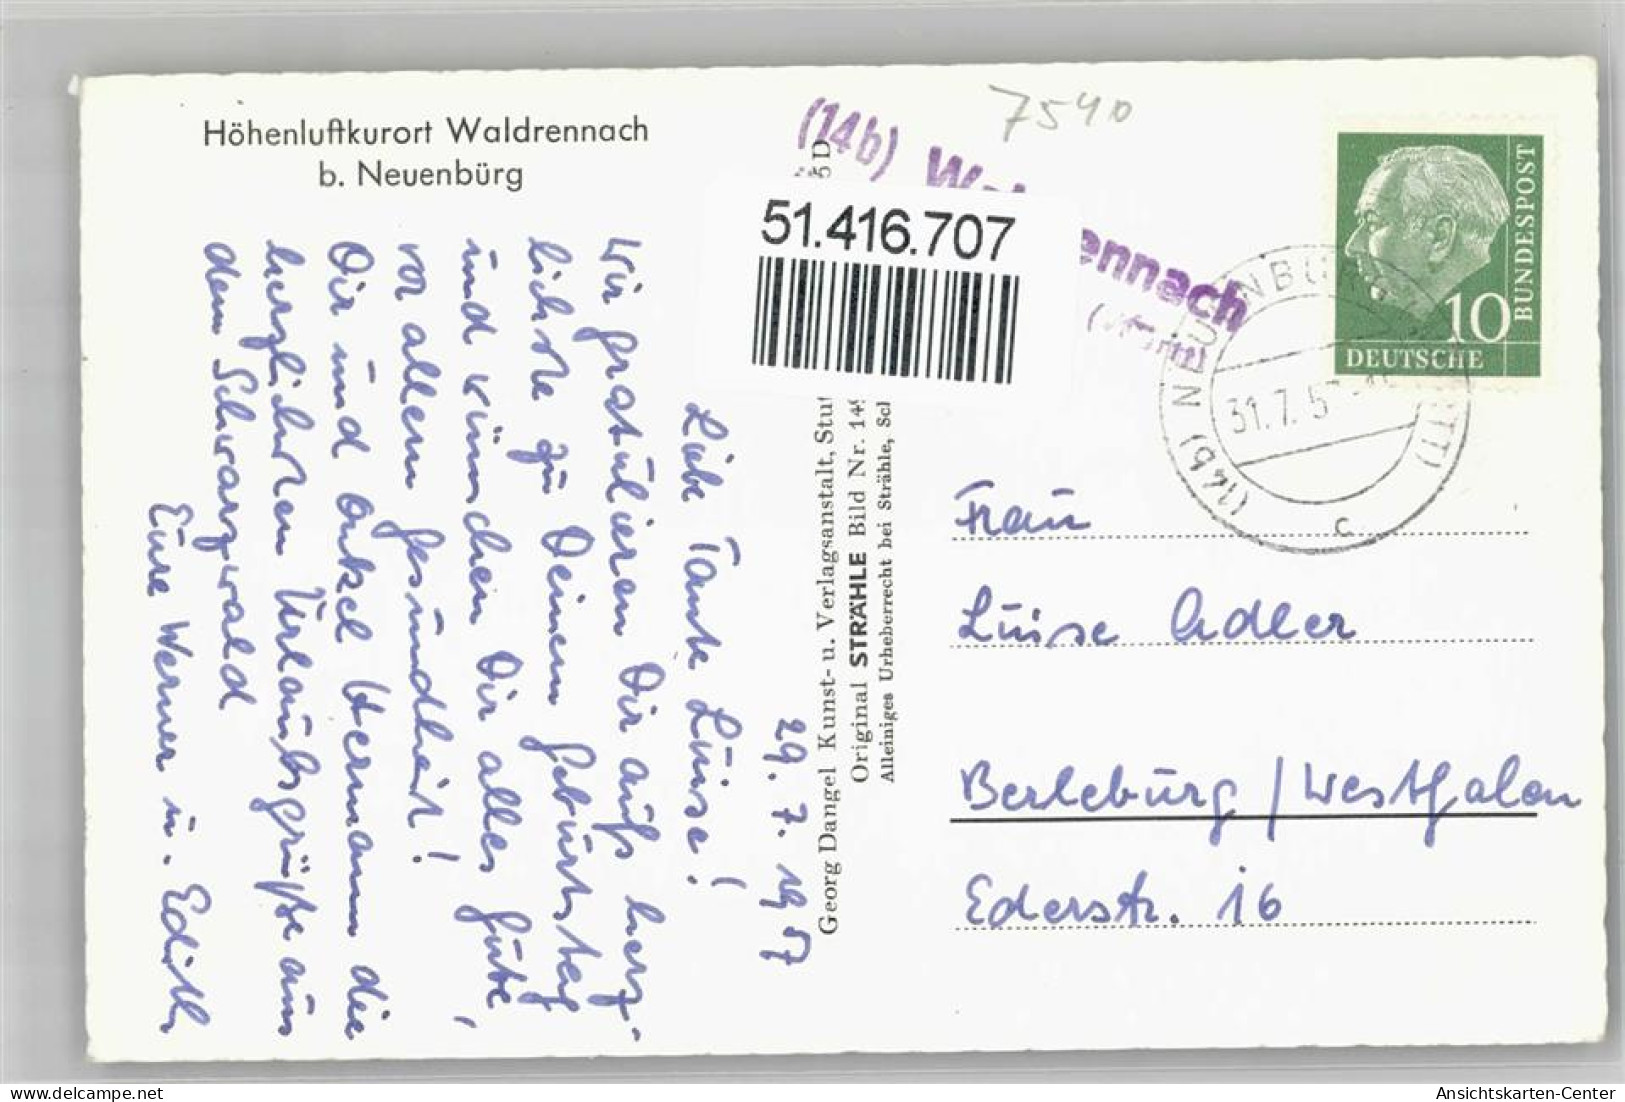 51416707 - Waldrennach - Karlsruhe